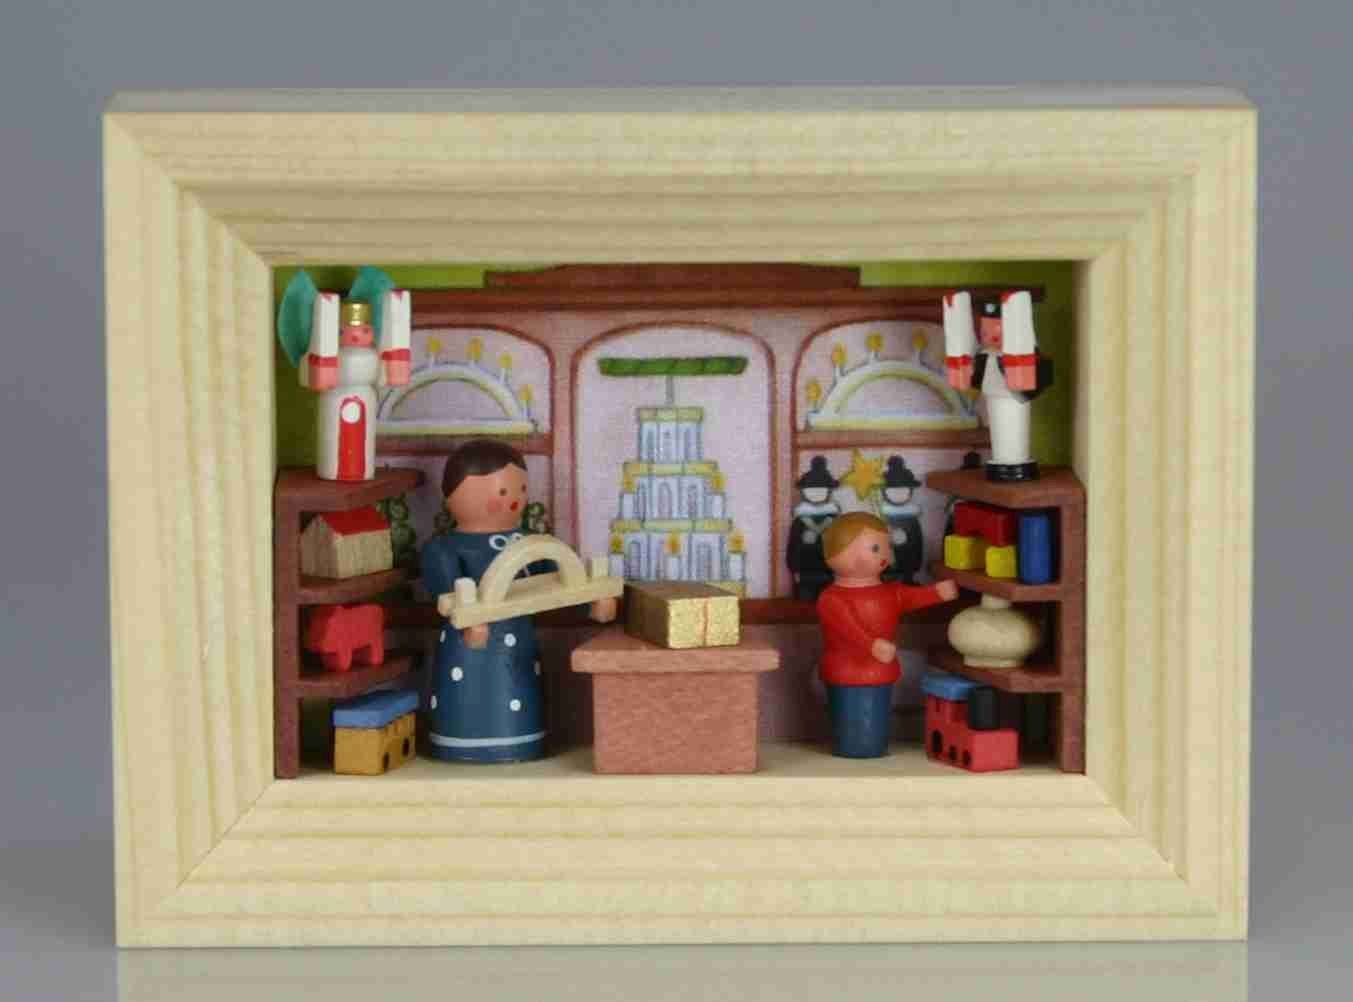 Stübelmacher Gunter Flath Weihnachtsfigur Weihnachtsdekoration Miniatur im Rähmchen Spielzeugladen BxH 7x5,5cm von Stübelmacher Gunter Flath